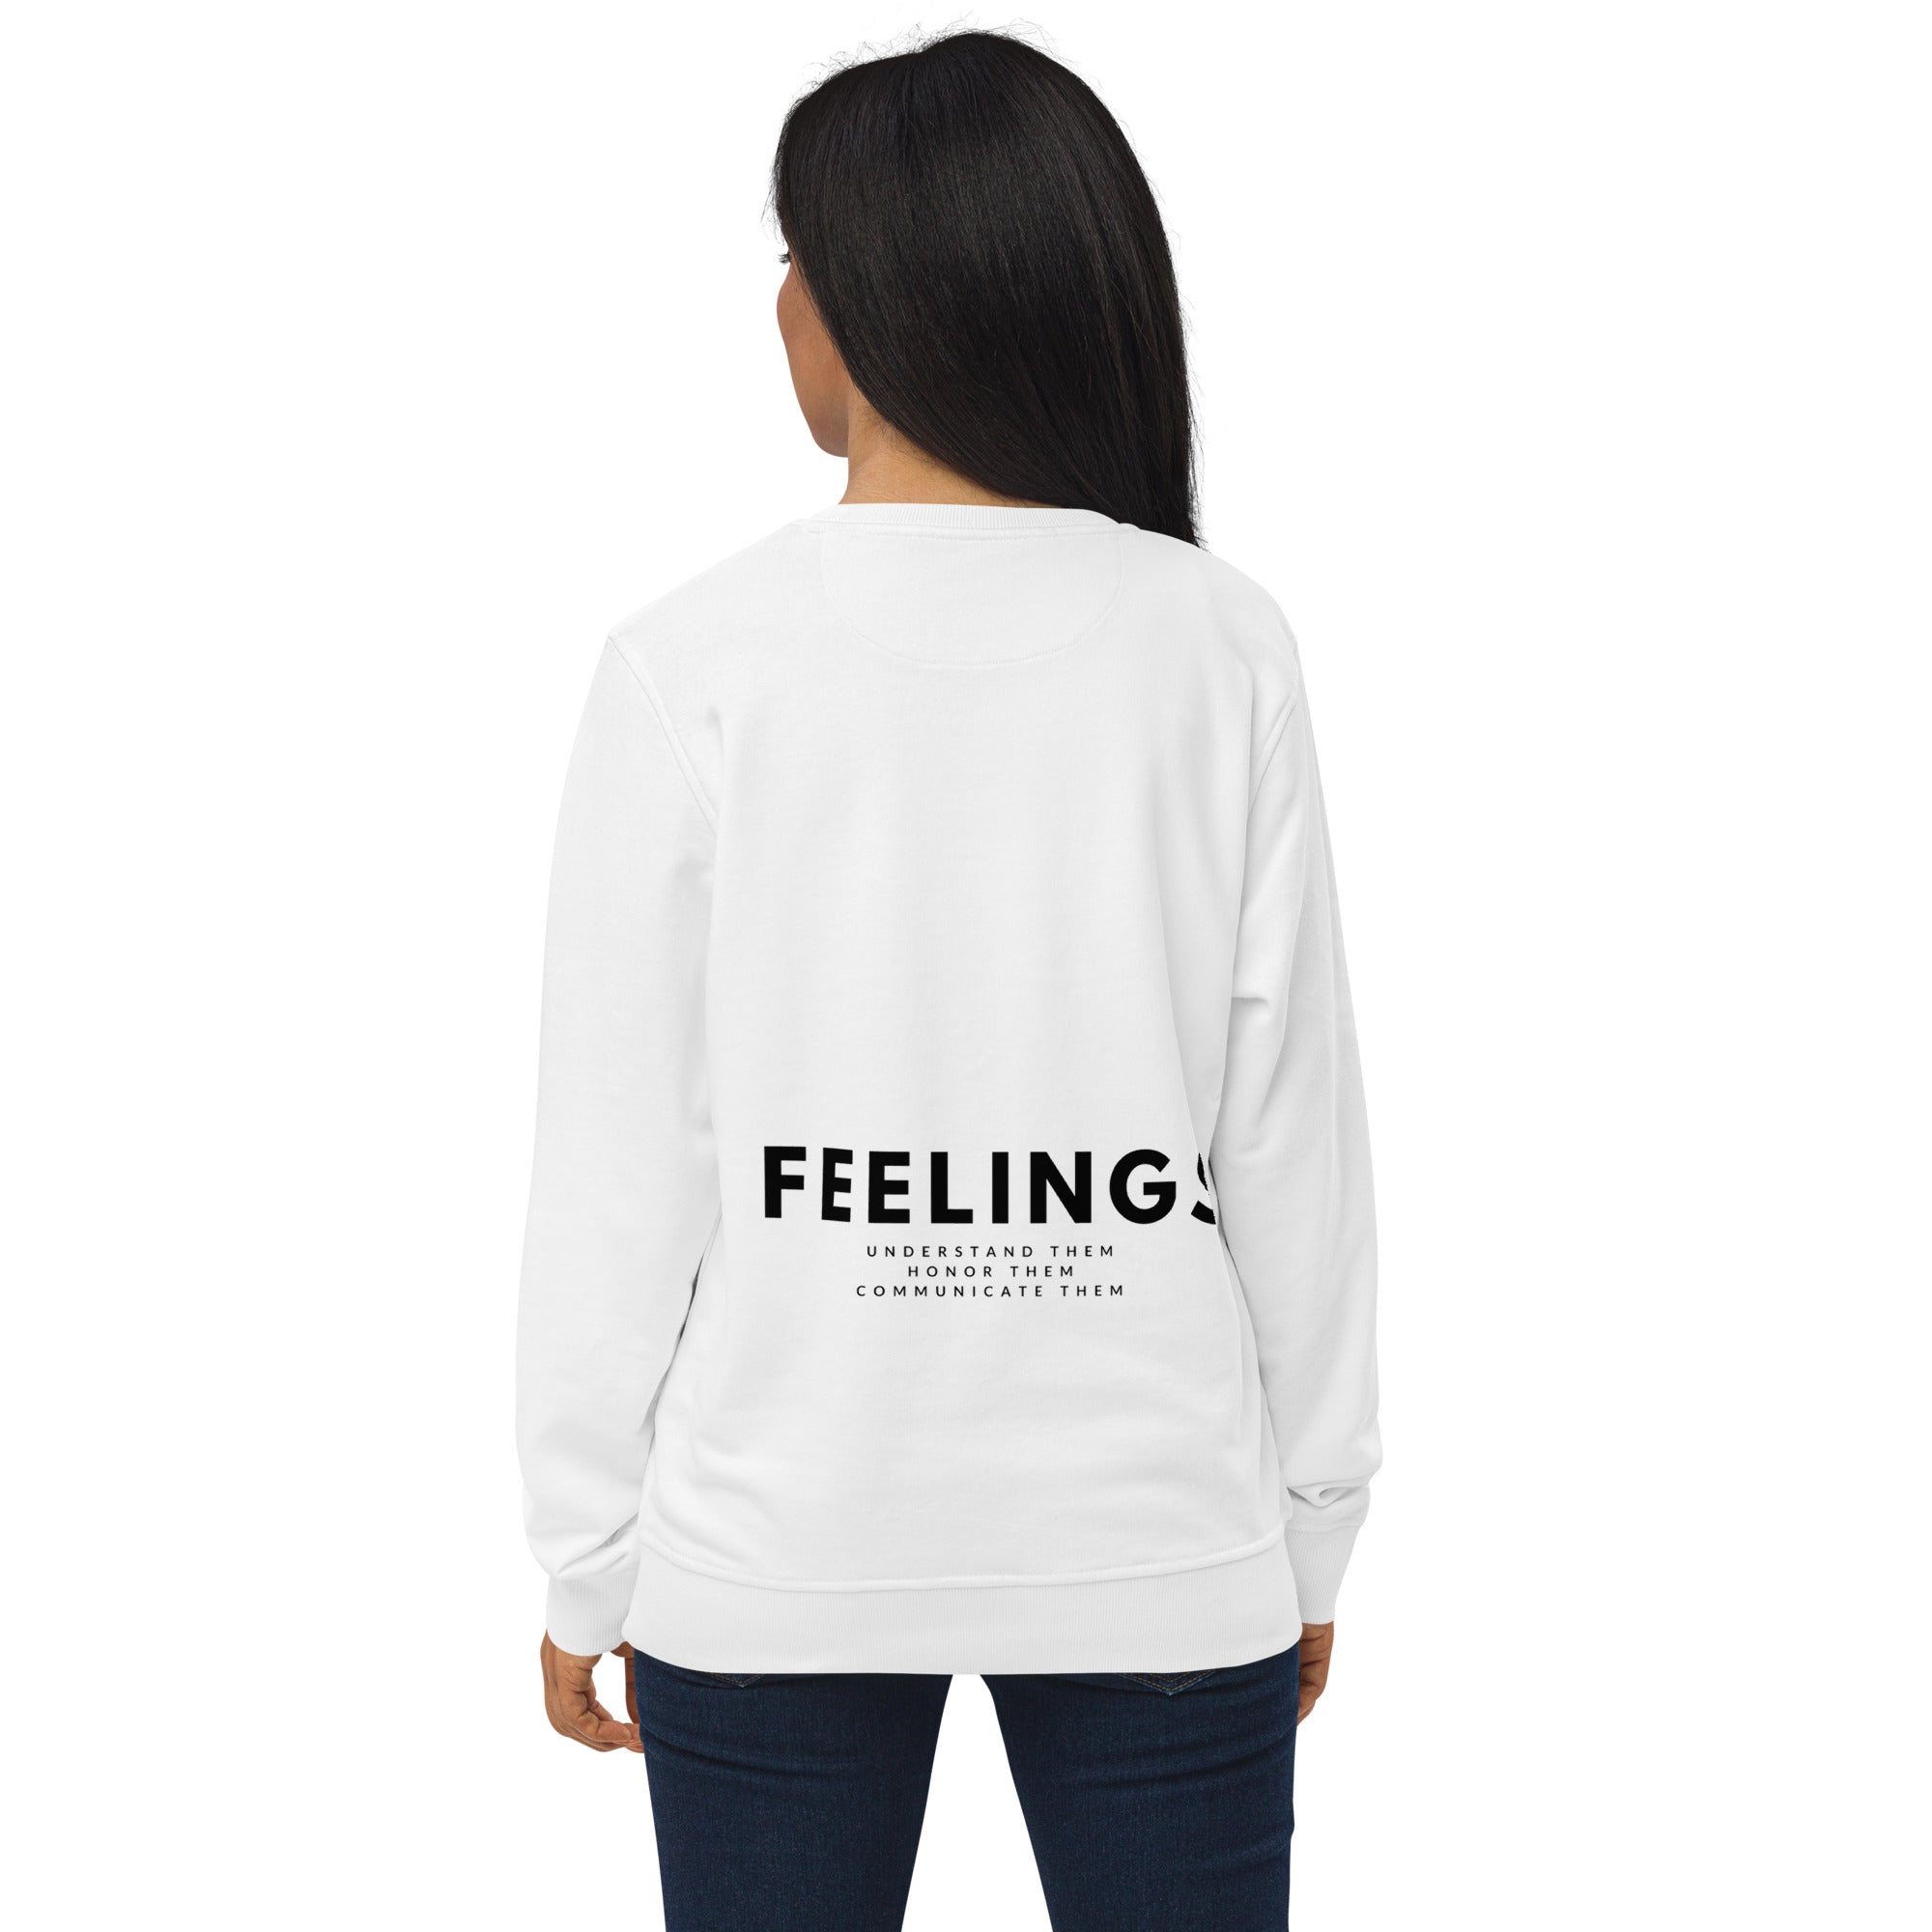 Feelings Unisex Organic Sweatshirt